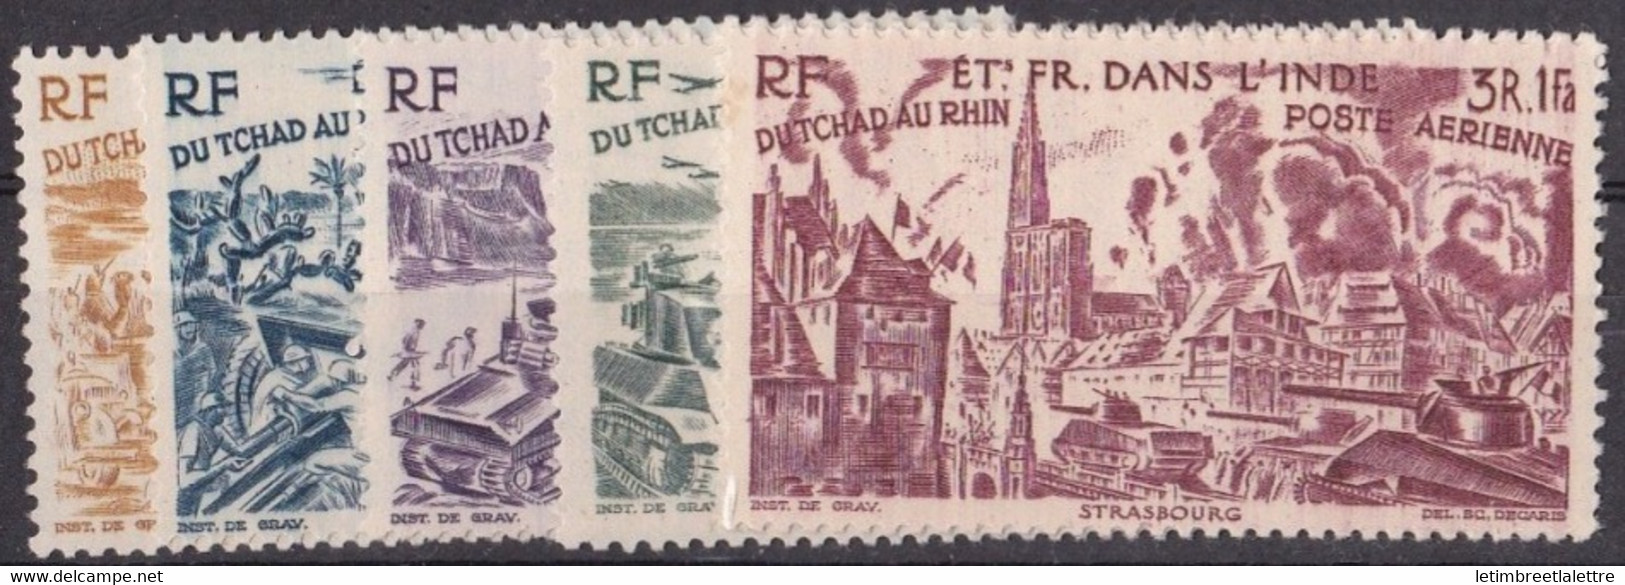 ⭐ Inde - Poste Aérienne - YT N° 11 à 16 ** - Neuf Sans Charnière - 1946 ⭐ - Neufs